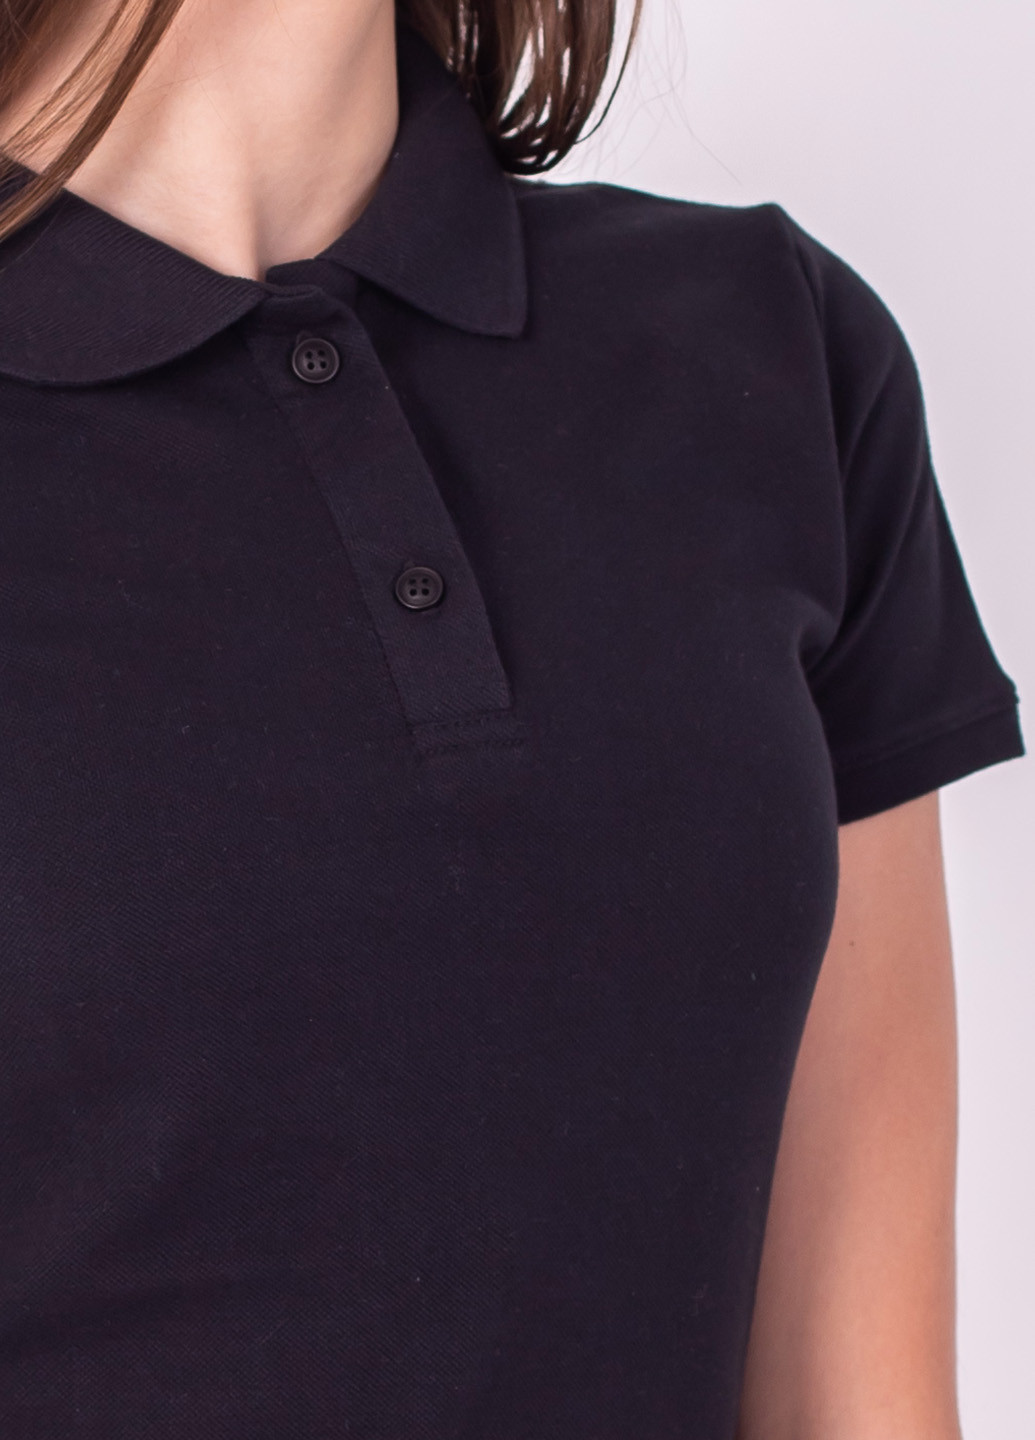 Черная женская футболка-футболка поло жіноча TvoePolo однотонная